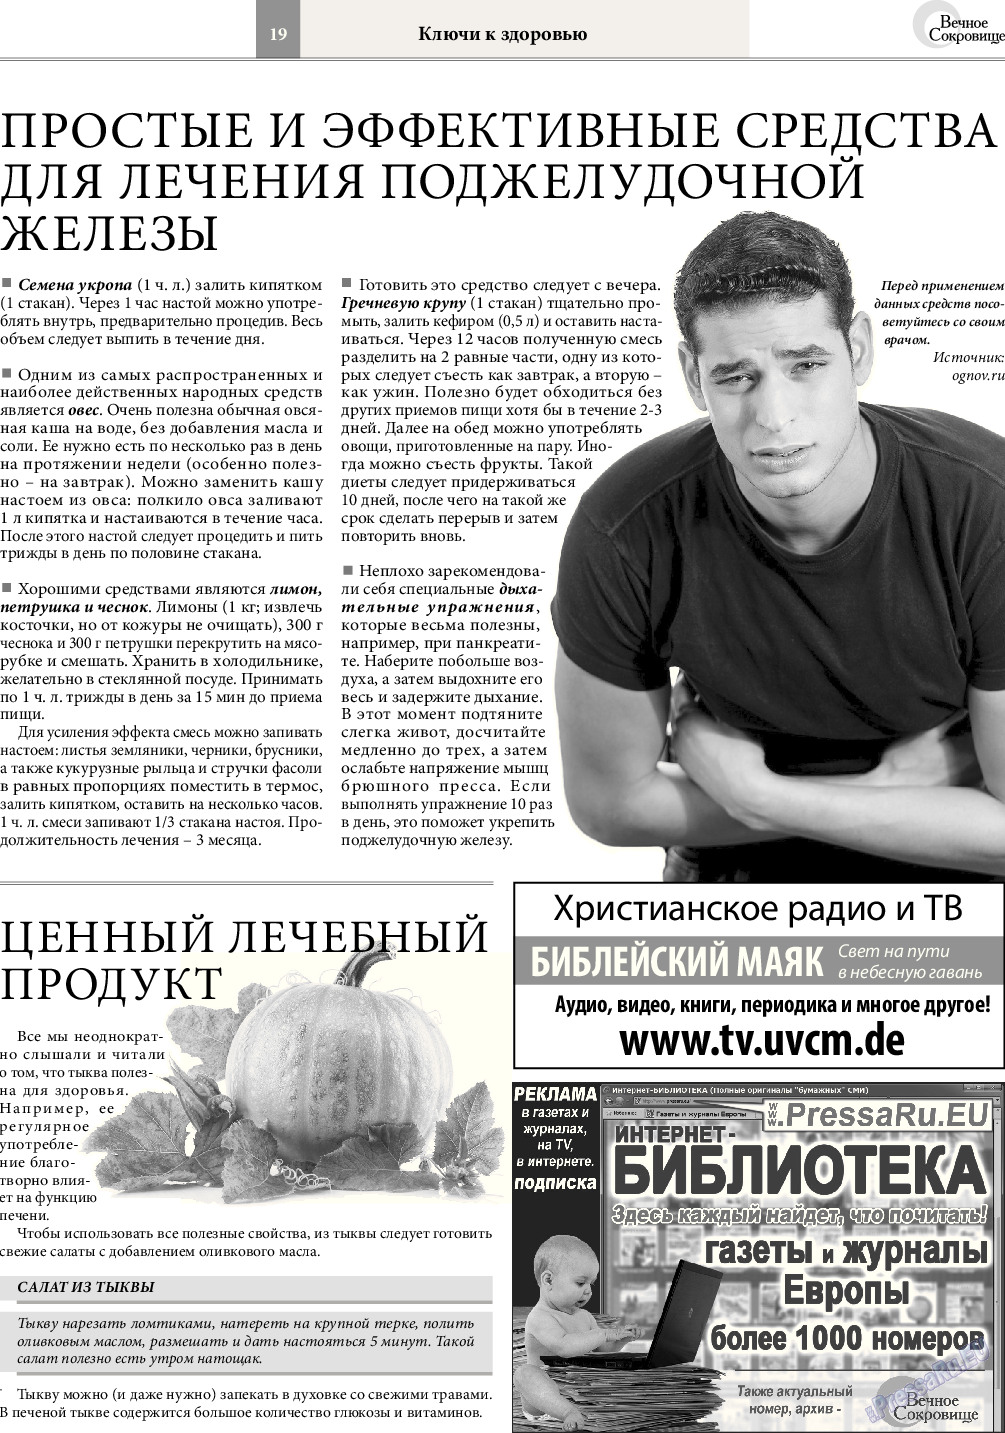 Вечное сокровище (газета). 2016 год, номер 5, стр. 19